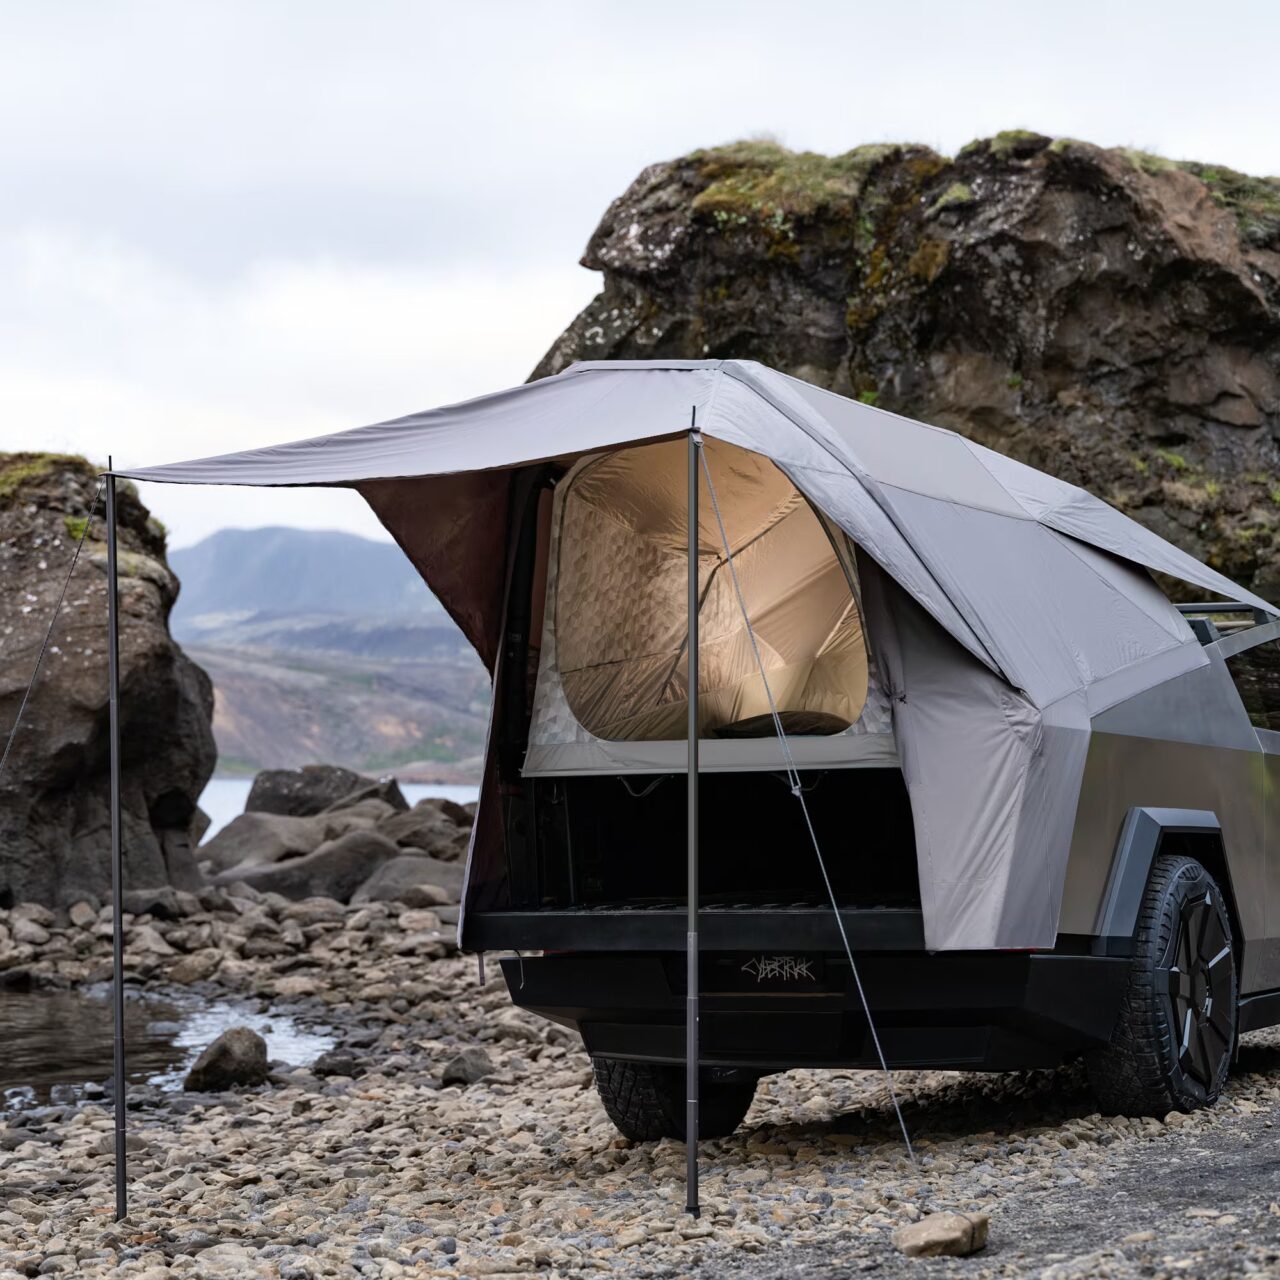 Namiot dachowy zamontowany na pickupie, zaparkowanym wśród kamieni przy strumieniu, z widokiem na górzysty krajobraz.